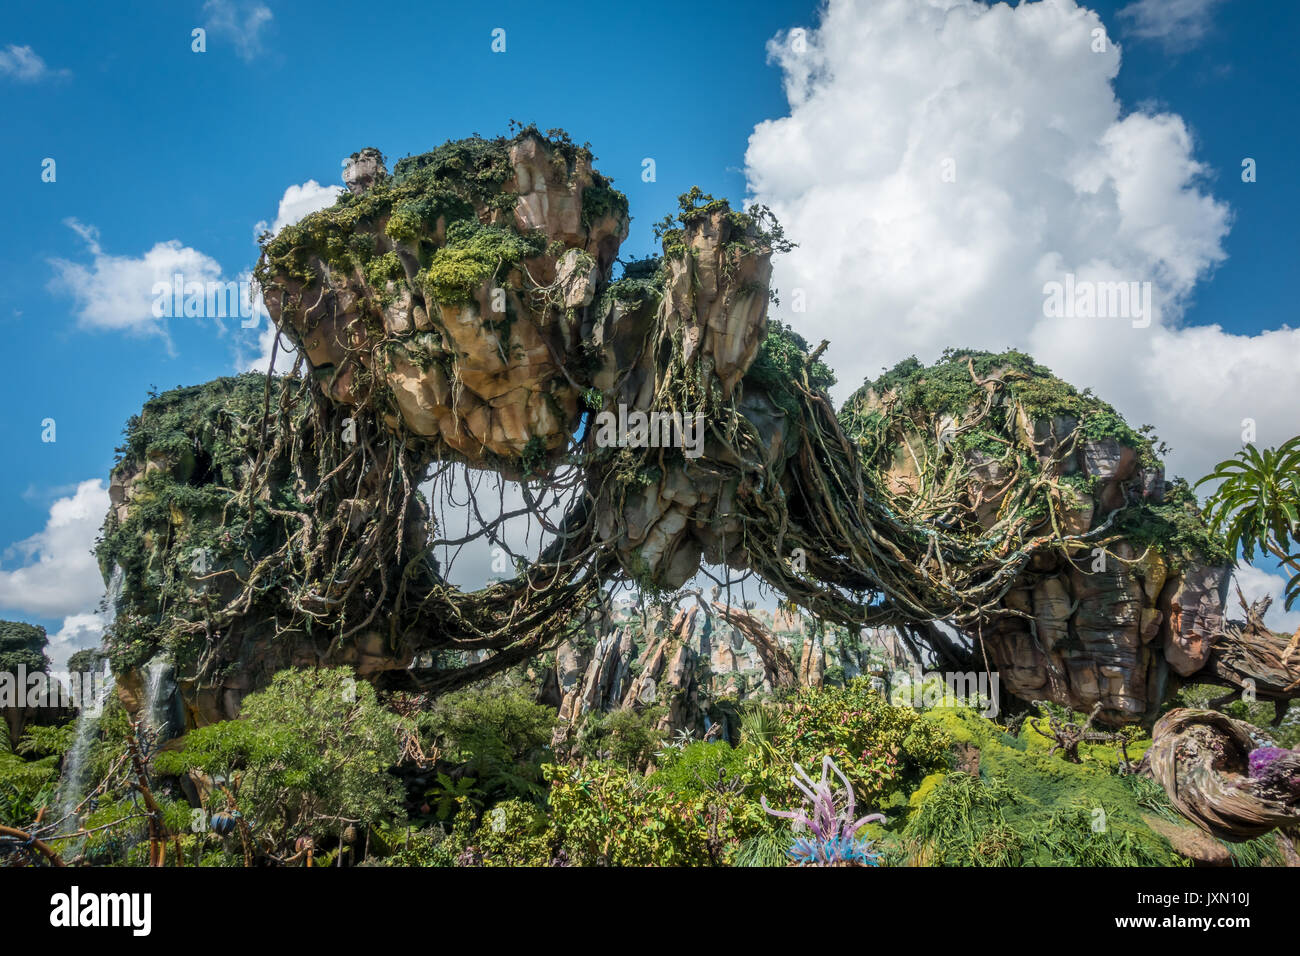 Las montañas flotantes de Pandora, Avatar de la tierra, Animal Kingdom, Walt Disney World, Orlando, Florida. Foto de stock